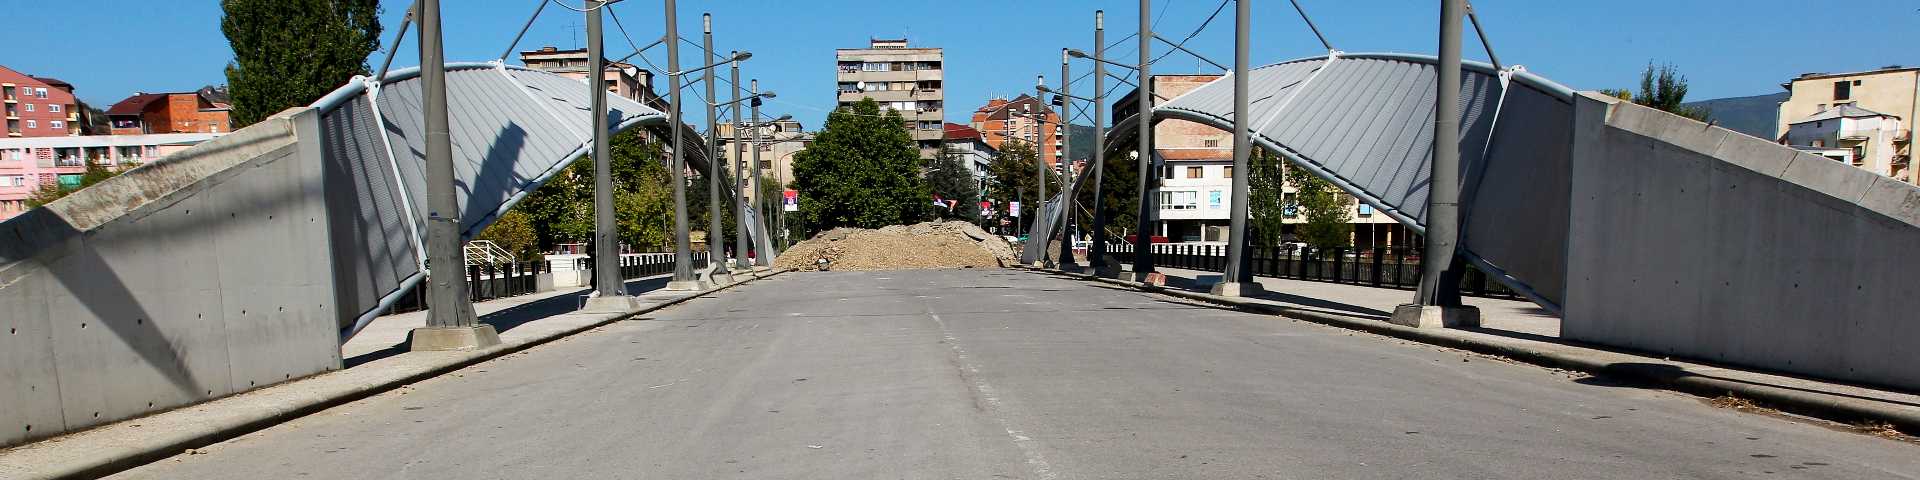 Како је Косовска Митровица подељена: Mост који је раздвојио српску и албанску обалу Ибра